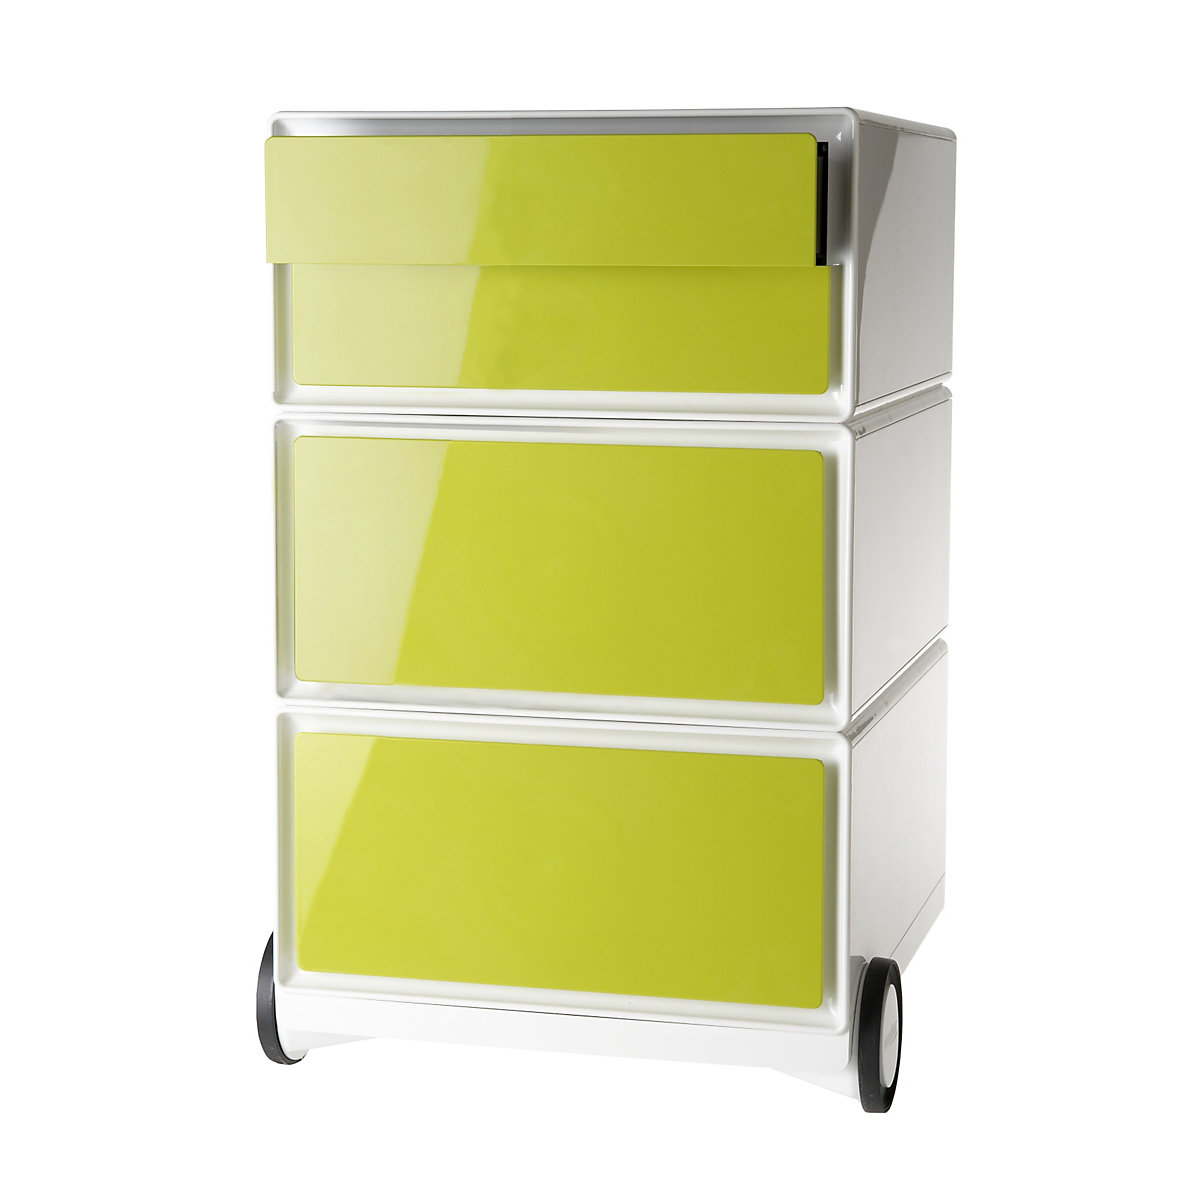 Pokretni ladičar easyBox® – Paperflow, 2 ladice, 2 plitke ladice, u bijeloj / zelenoj boji